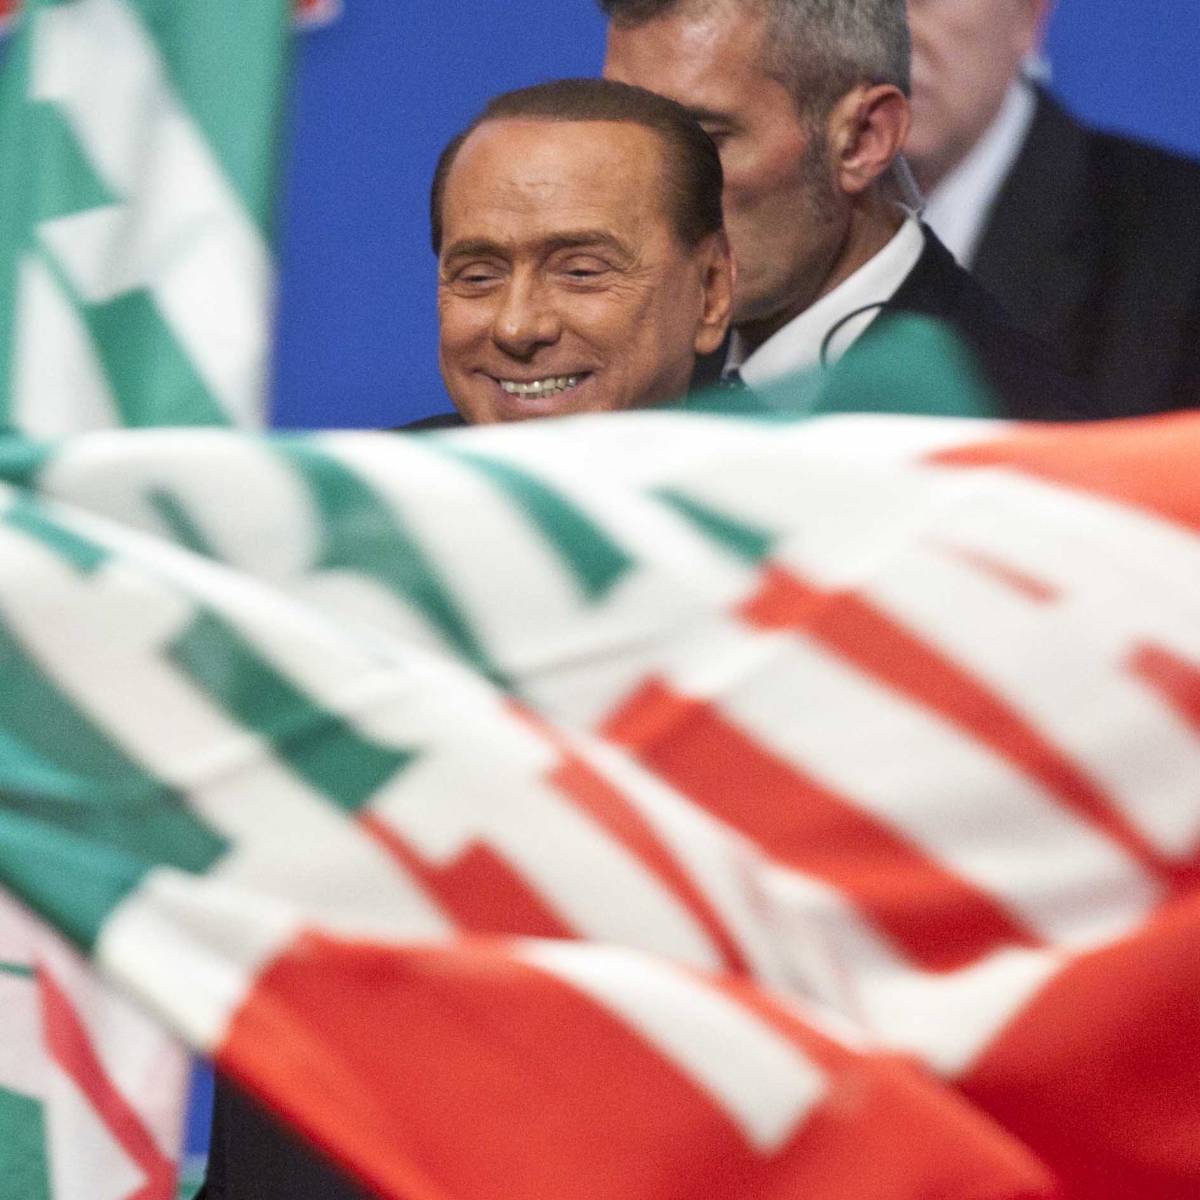 La mossa di Berlusconi: adesso tutti in silenzio poi guiderò la riscossa